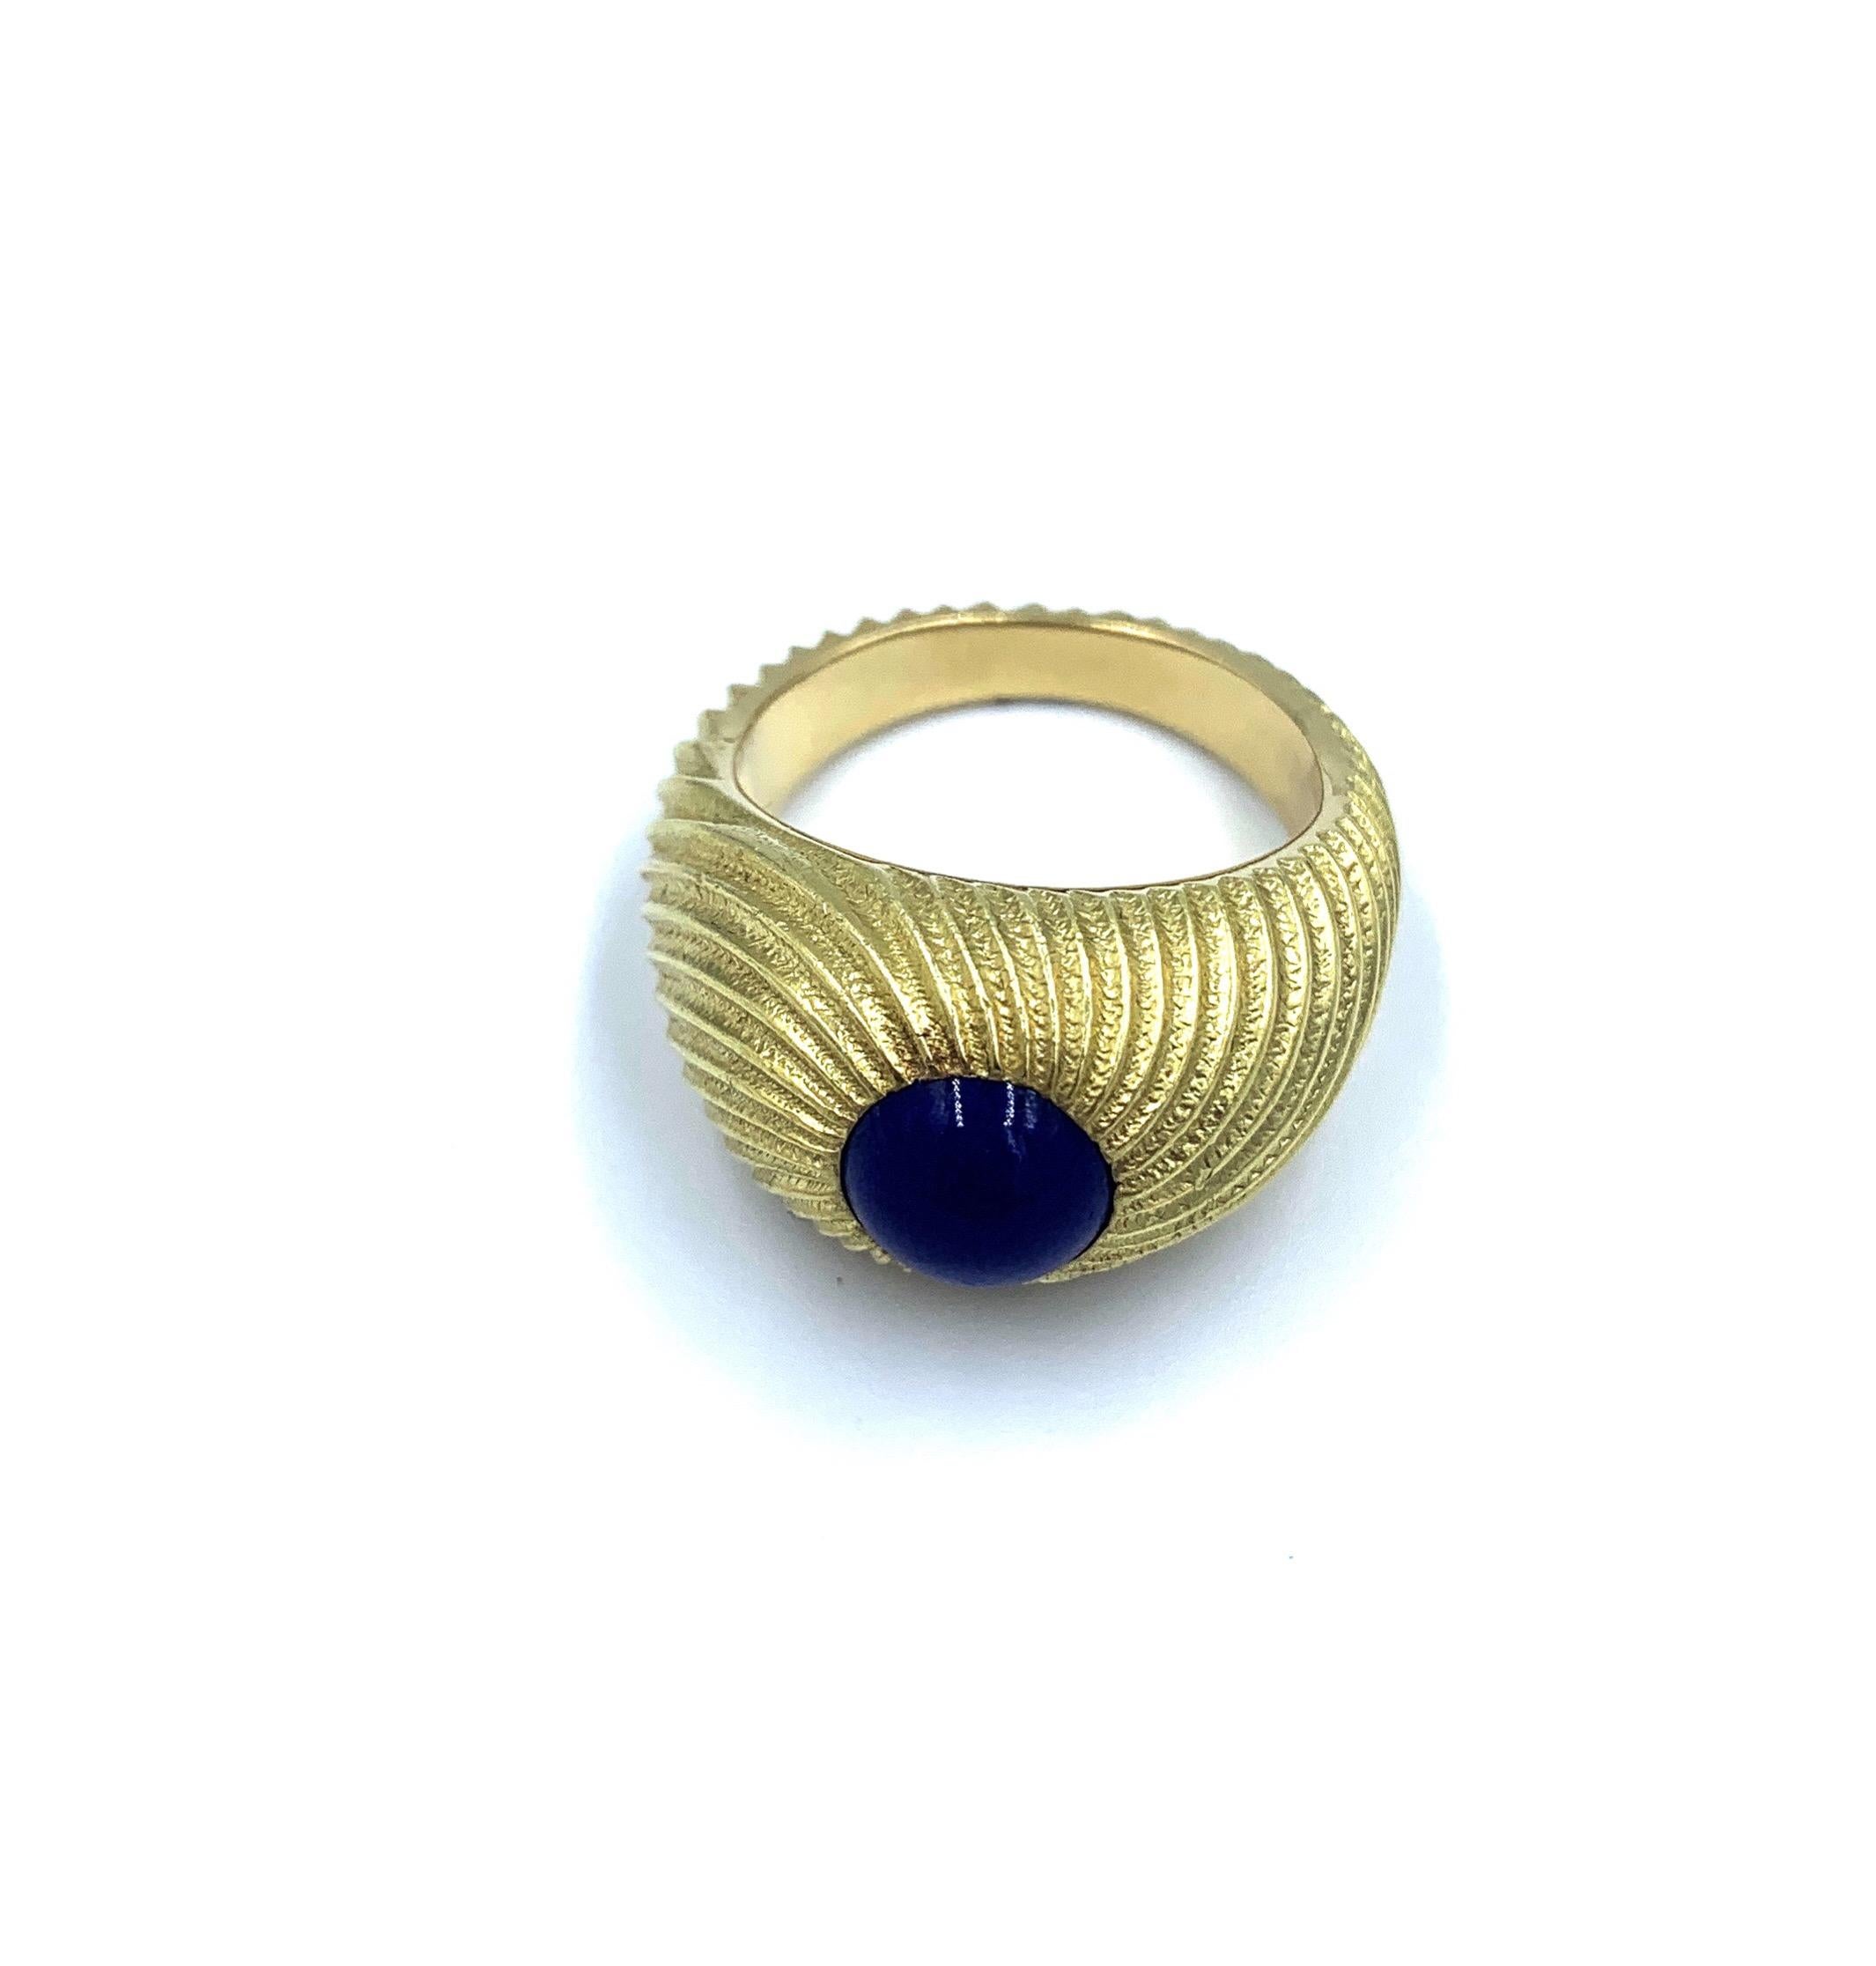 Schöner Herrenring aus 18 Karat Gelbgold, entworfen von Jean Shlumberger für Tiffany & Co.  Dieser klassische und elegante Ring ist mit einem blauen Lapis-Cabochon besetzt und wurde von einem der Top-Designer von Tiffany entworfen. 

Größe 9.5

18.6